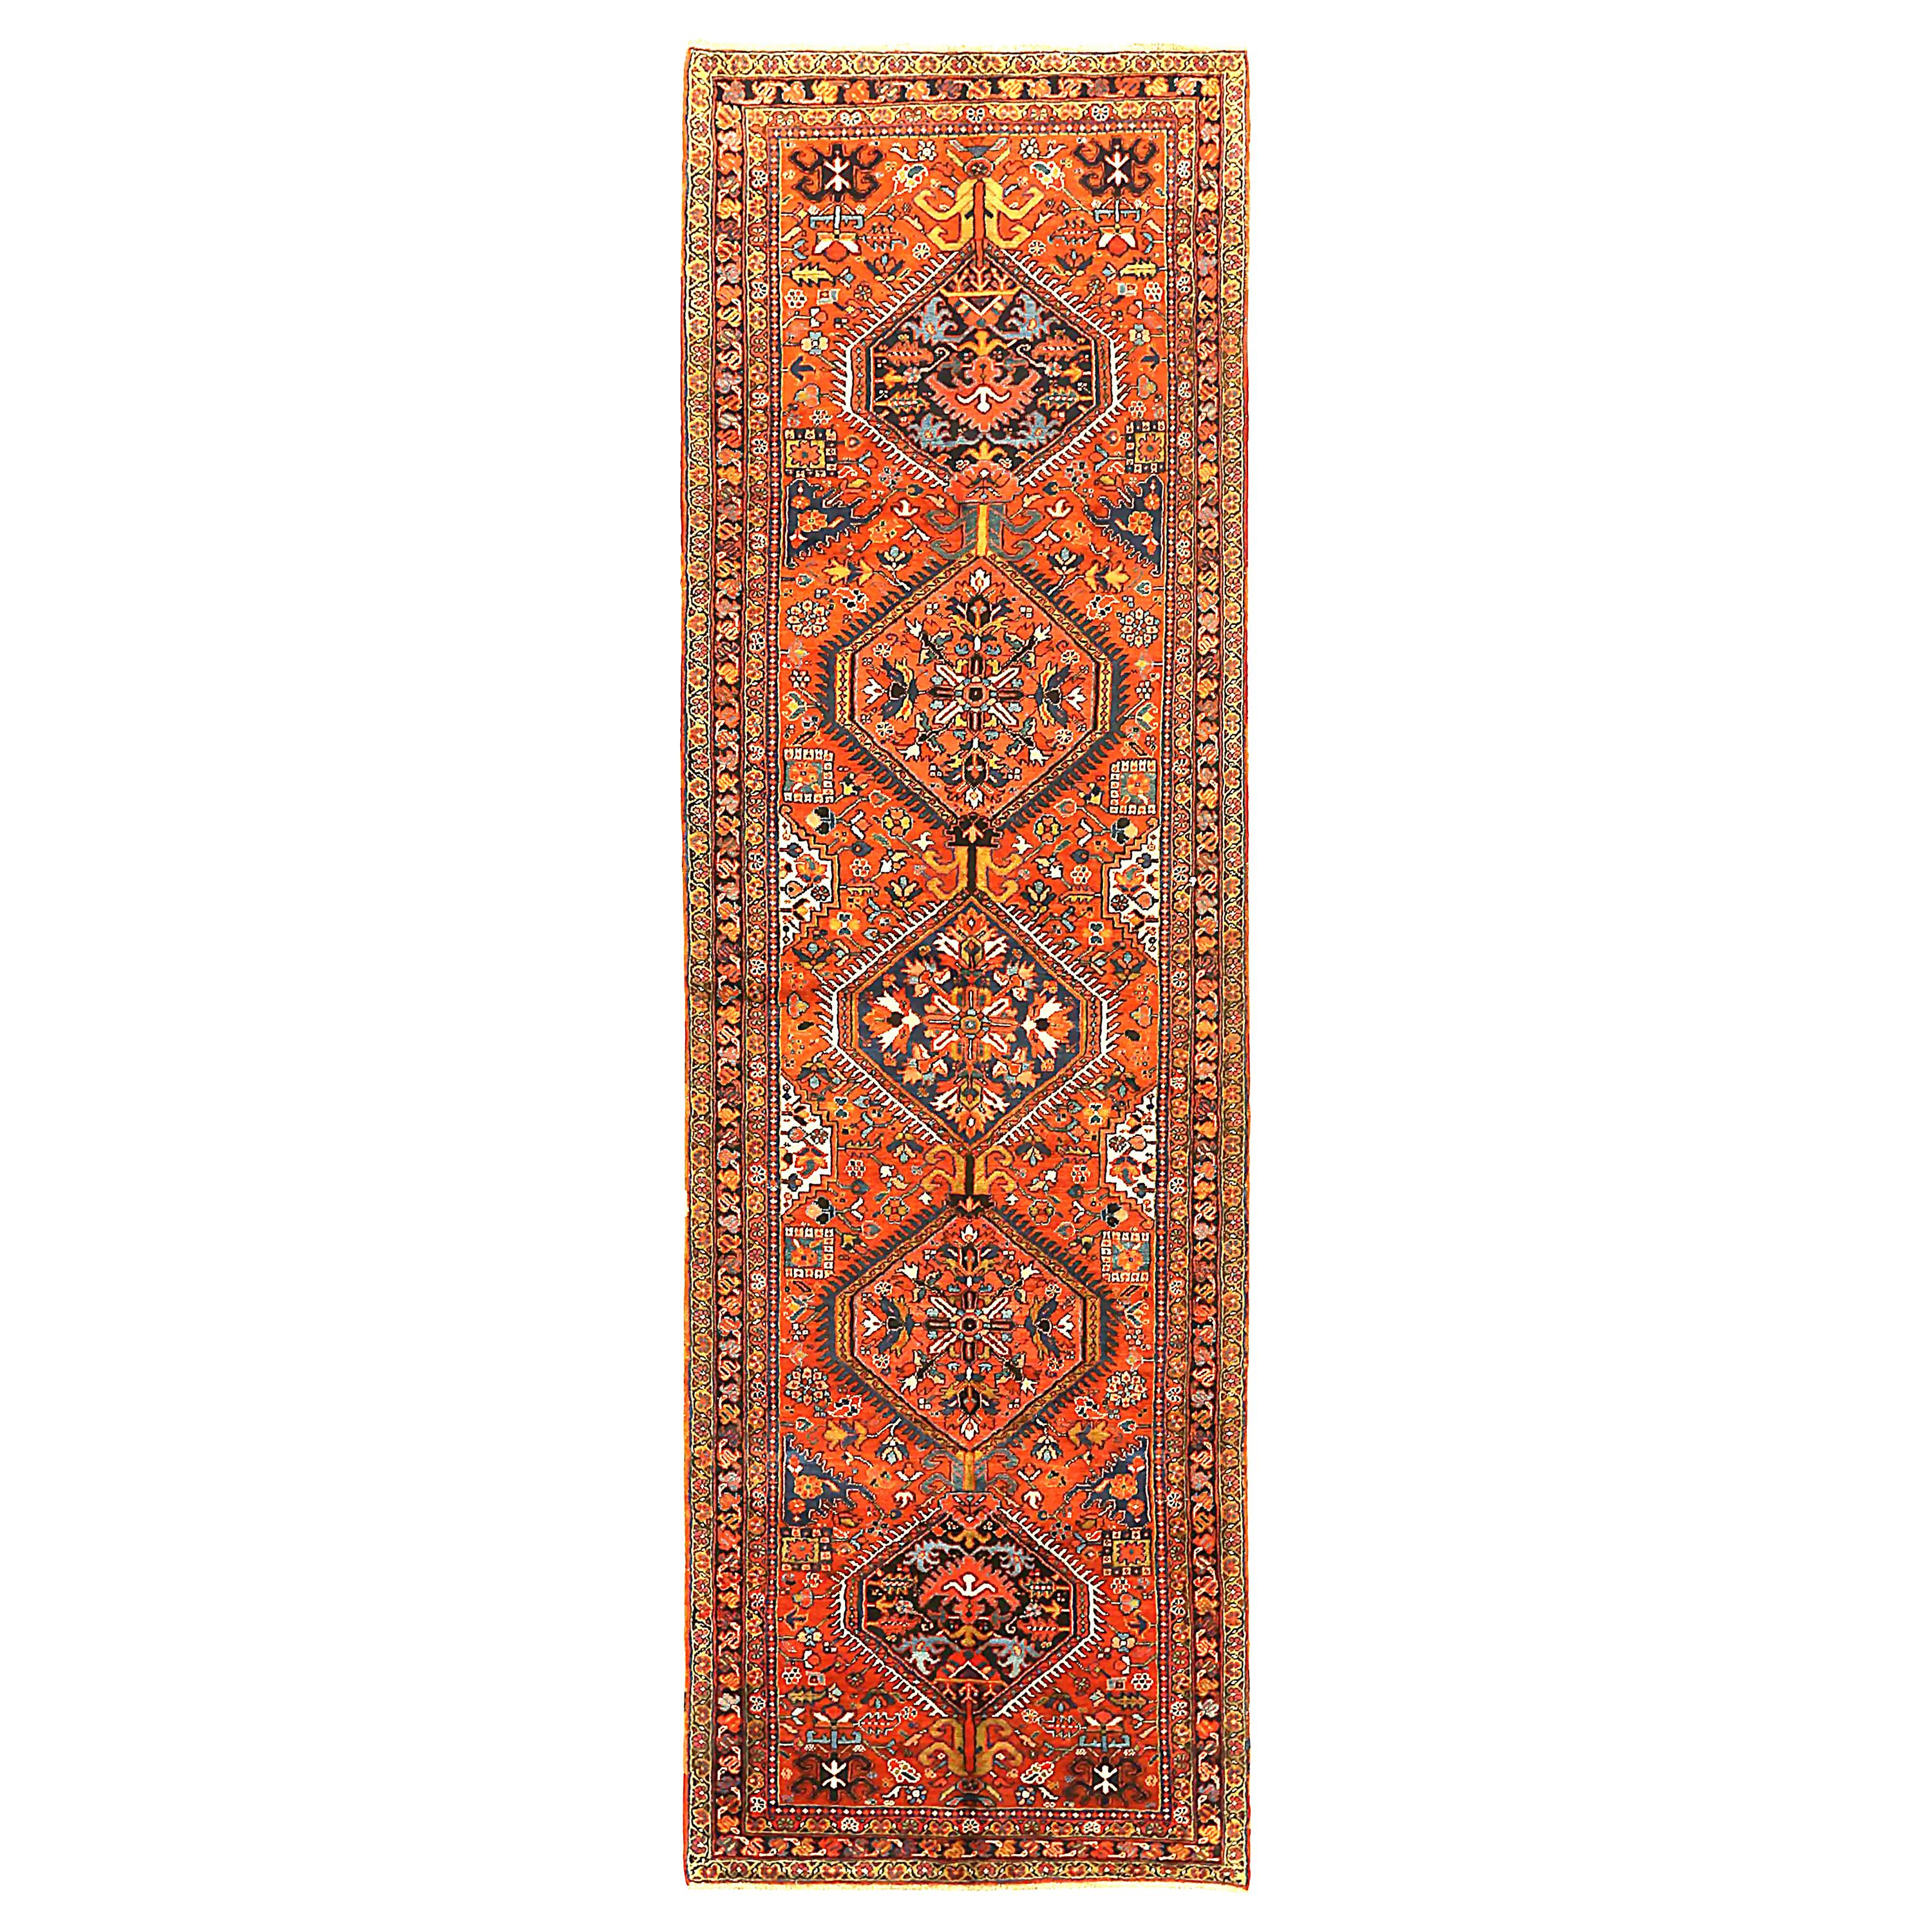 Antique Persian Runner Rug Heriz Design